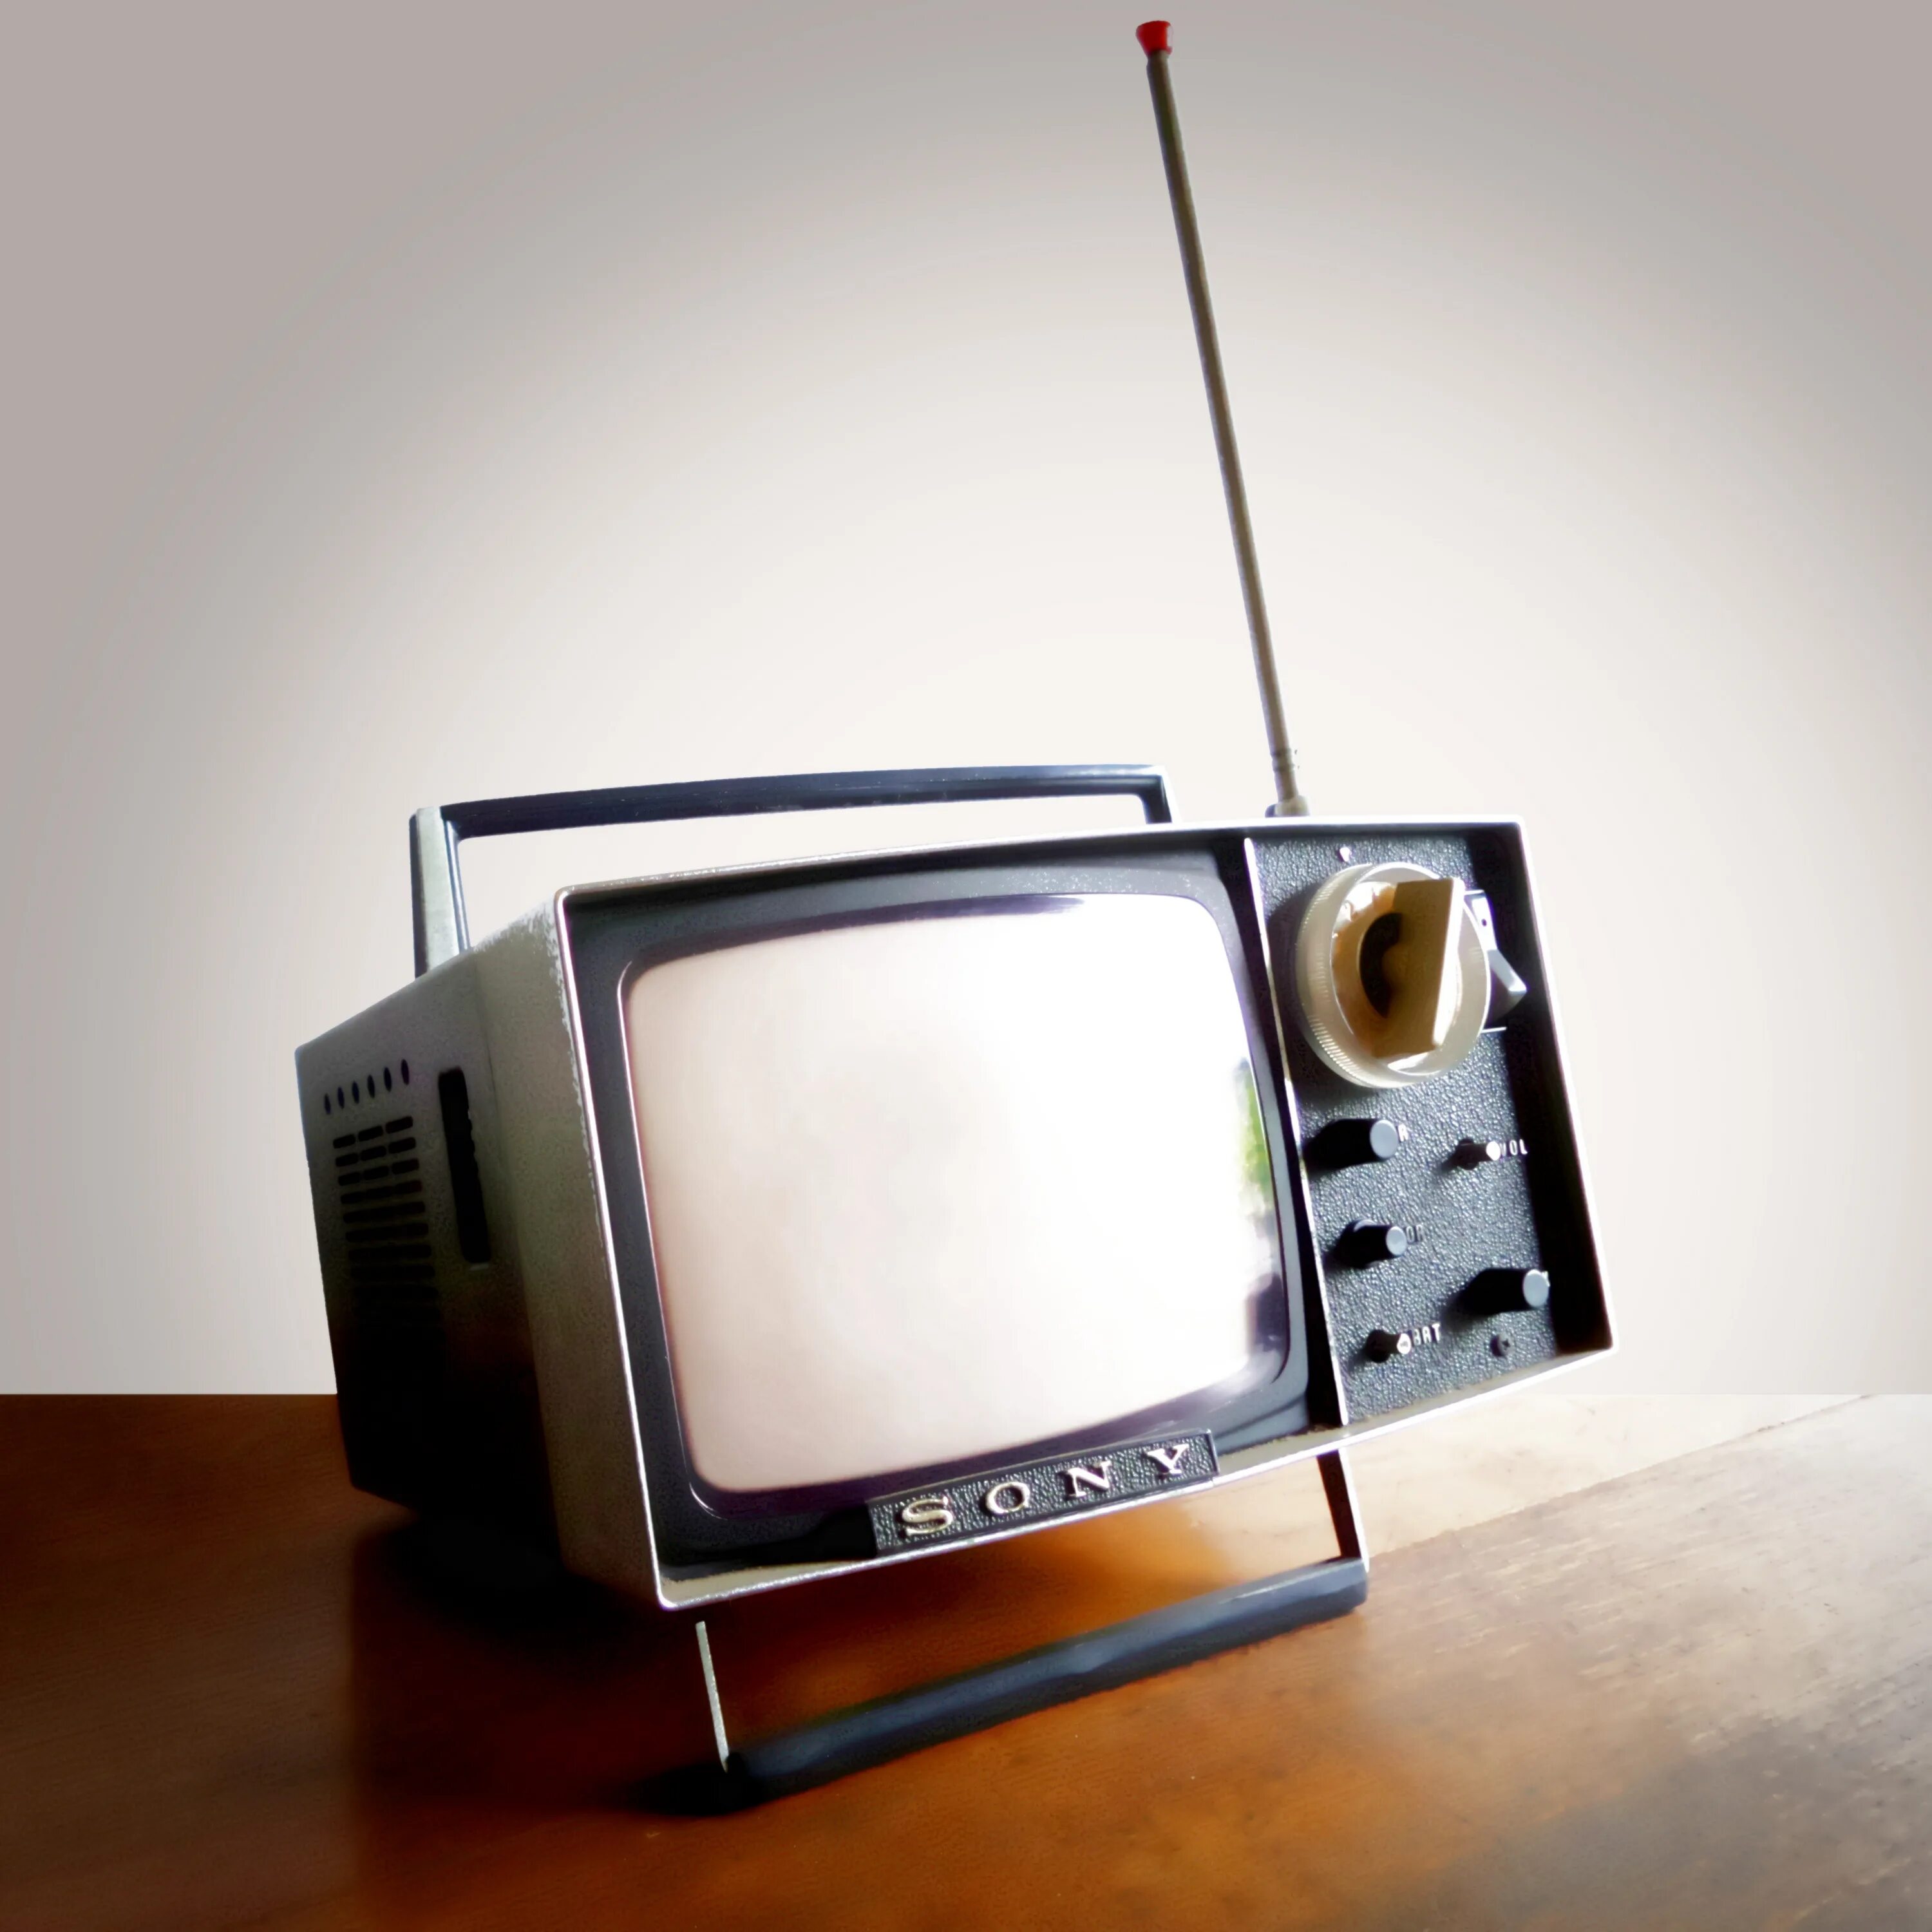 Новый бесплатный телевизор. Маленький телевизор. Старый телевизор. Старый маленький телевизор. Портативный телевизор старый.